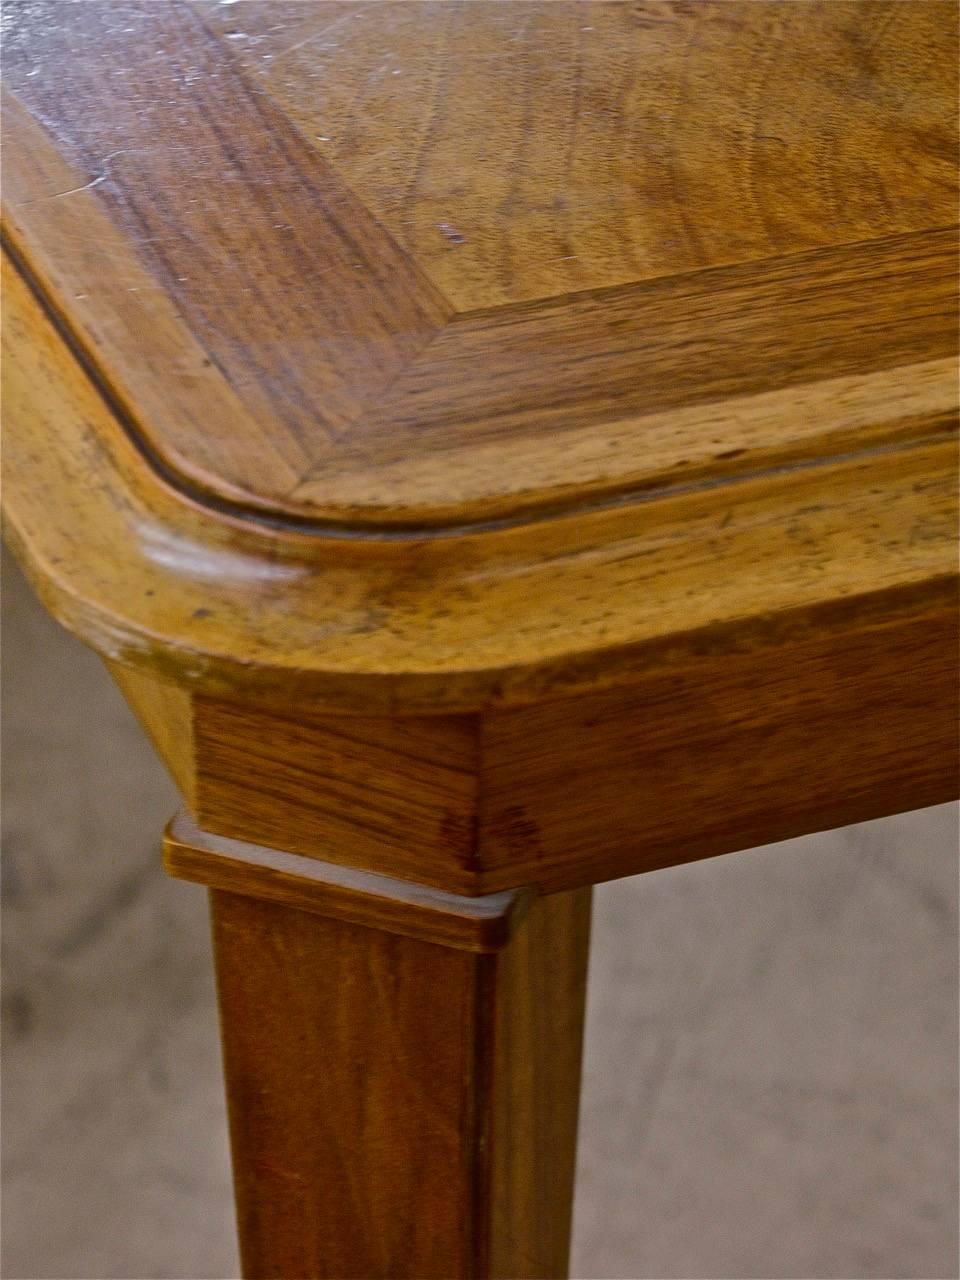 Französischer quadratischer Esstisch von Dominique aus französischem Nussbaum der 1940er Jahre im Art déco-Stil mit tiefen Bronzebeschlägen. 

Perfekt für ein kleineres Esszimmer oder einen Essbereich. Kann erweitert werden, um kundenspezifische